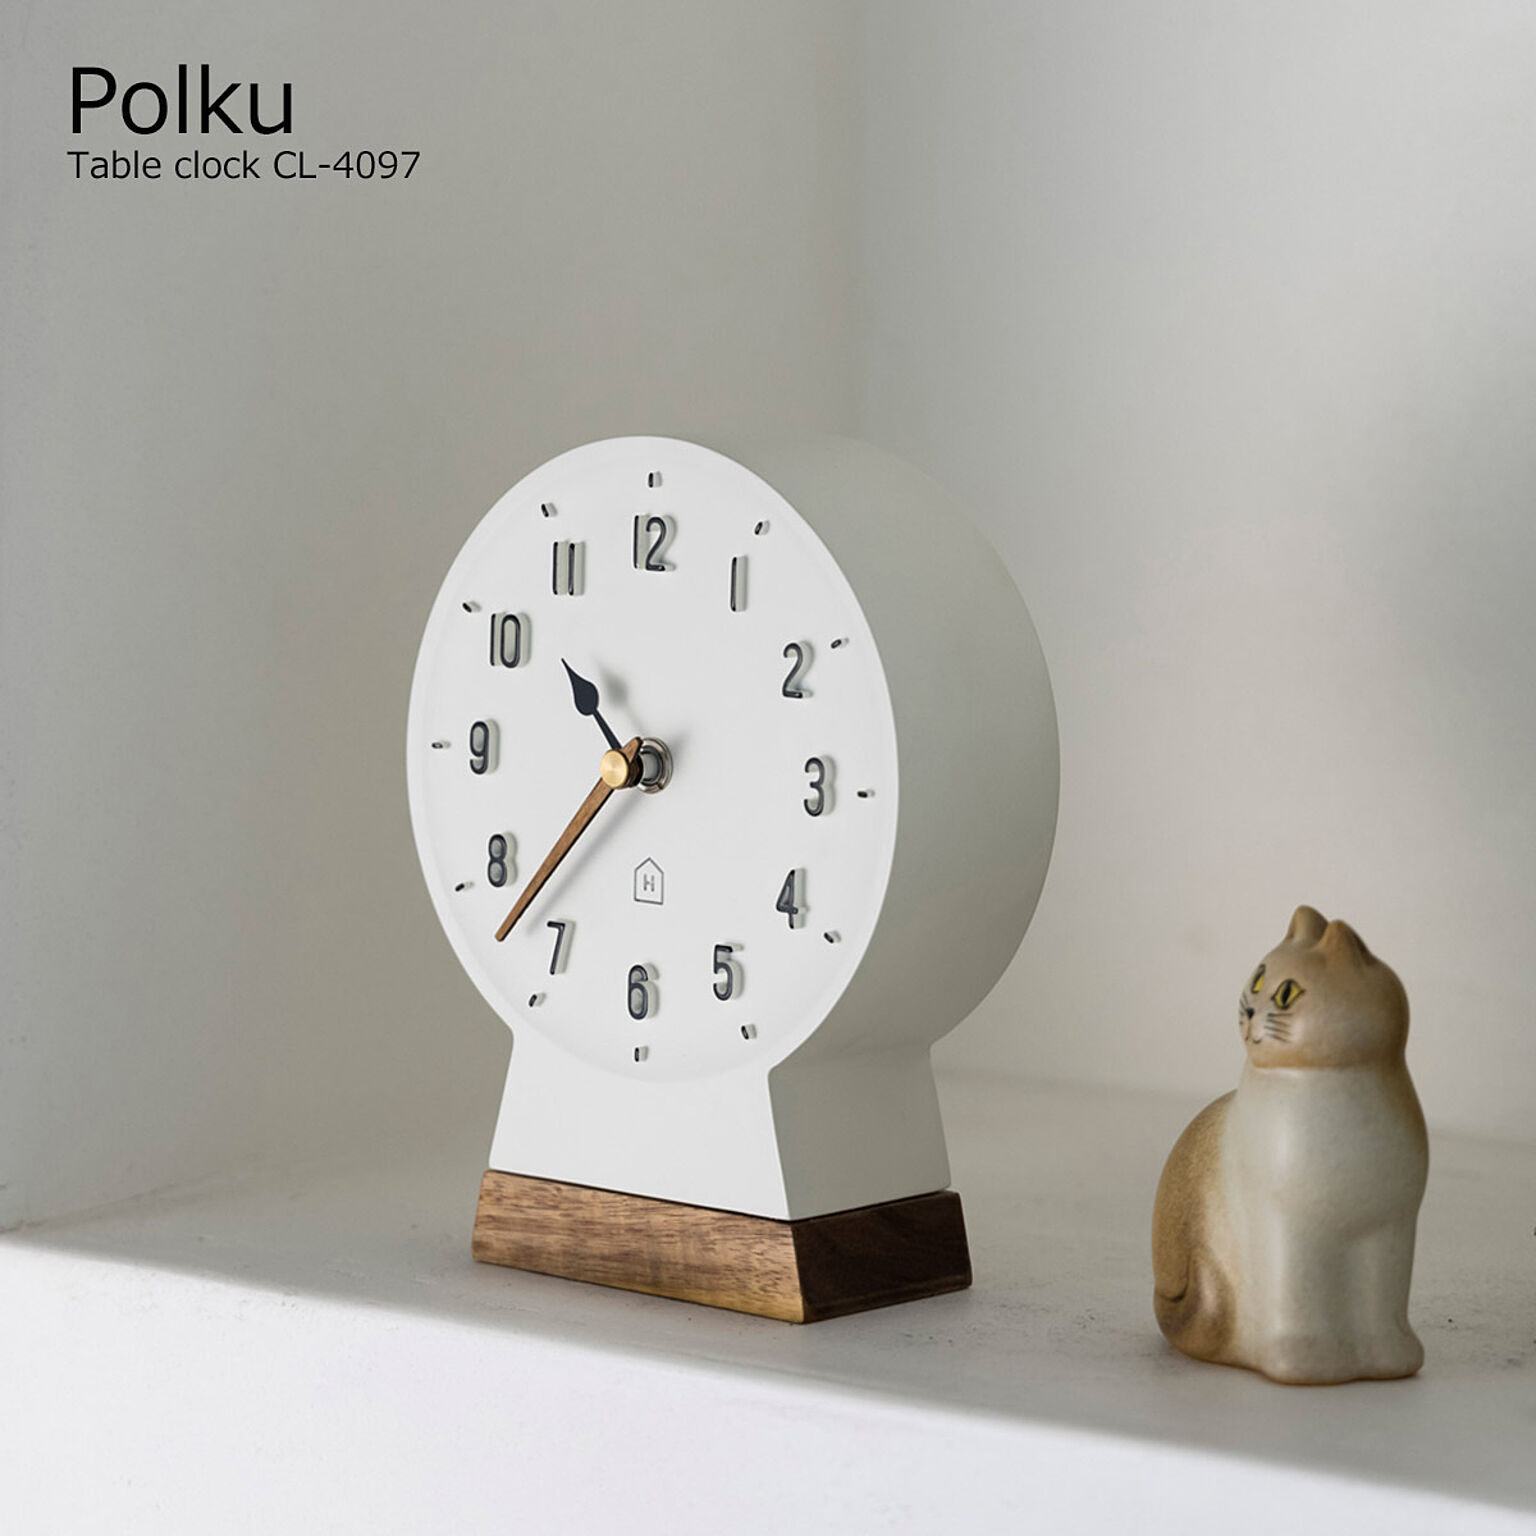 置き時計 おしゃれ 北欧 かわいい 置時計 テーブルクロック ポルク Polku CL-4097 リビング 玄関 寝室 一人暮らし オブジェ かわいい 白 オシャレ シンプル  モダン ナチュラル